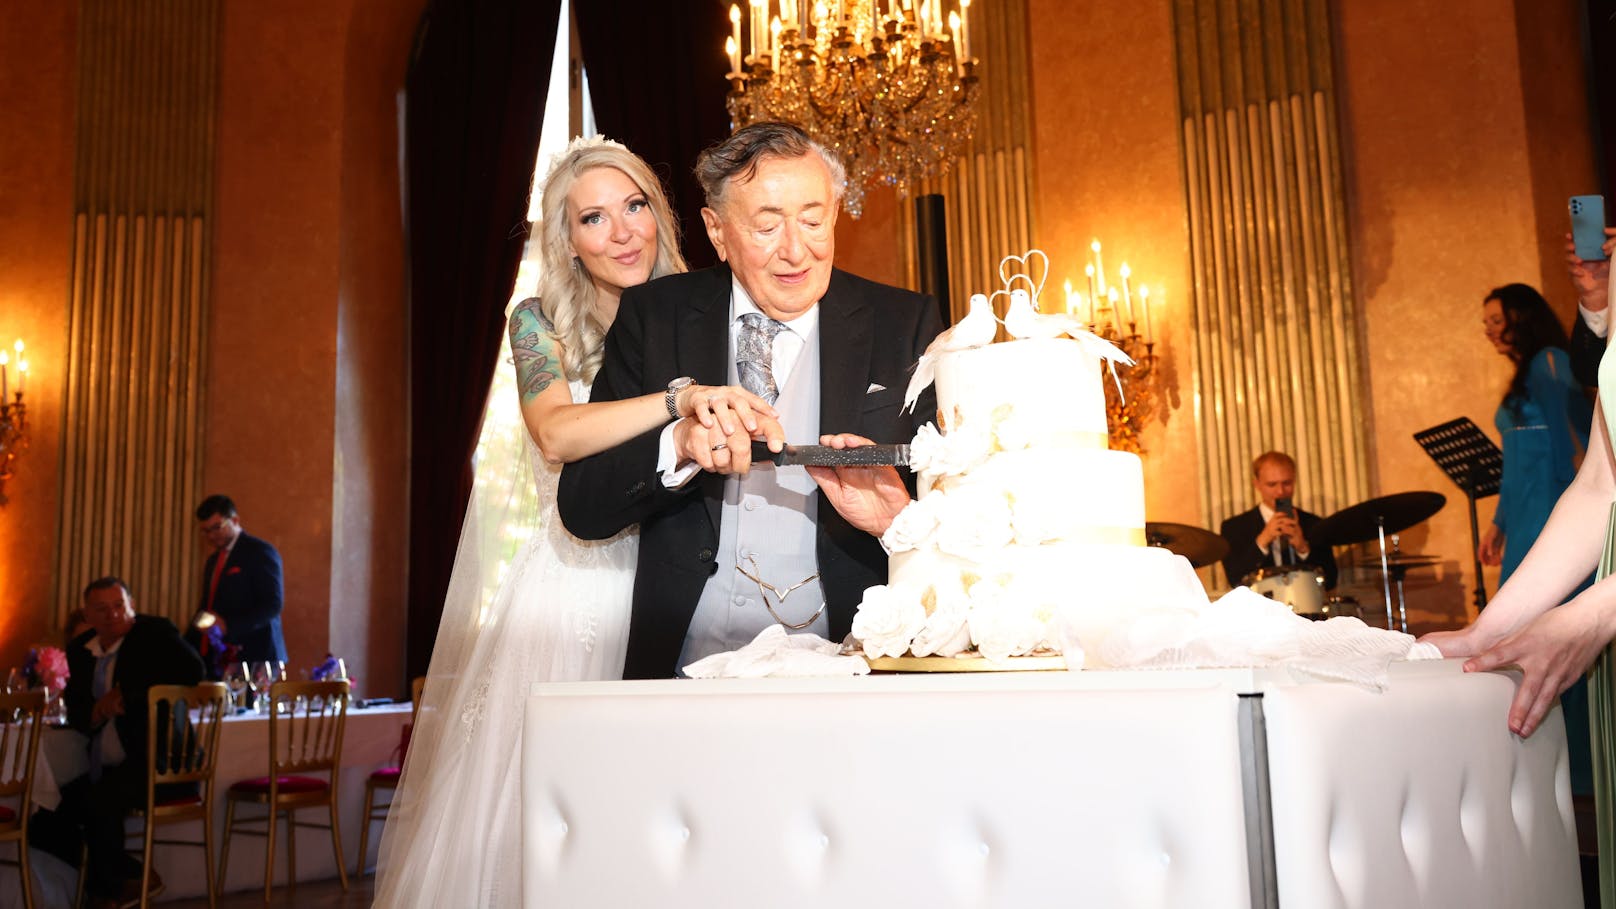 Gemeinsam schnitt das Brautpaar die Torte an und teilte sich das erste Stück.